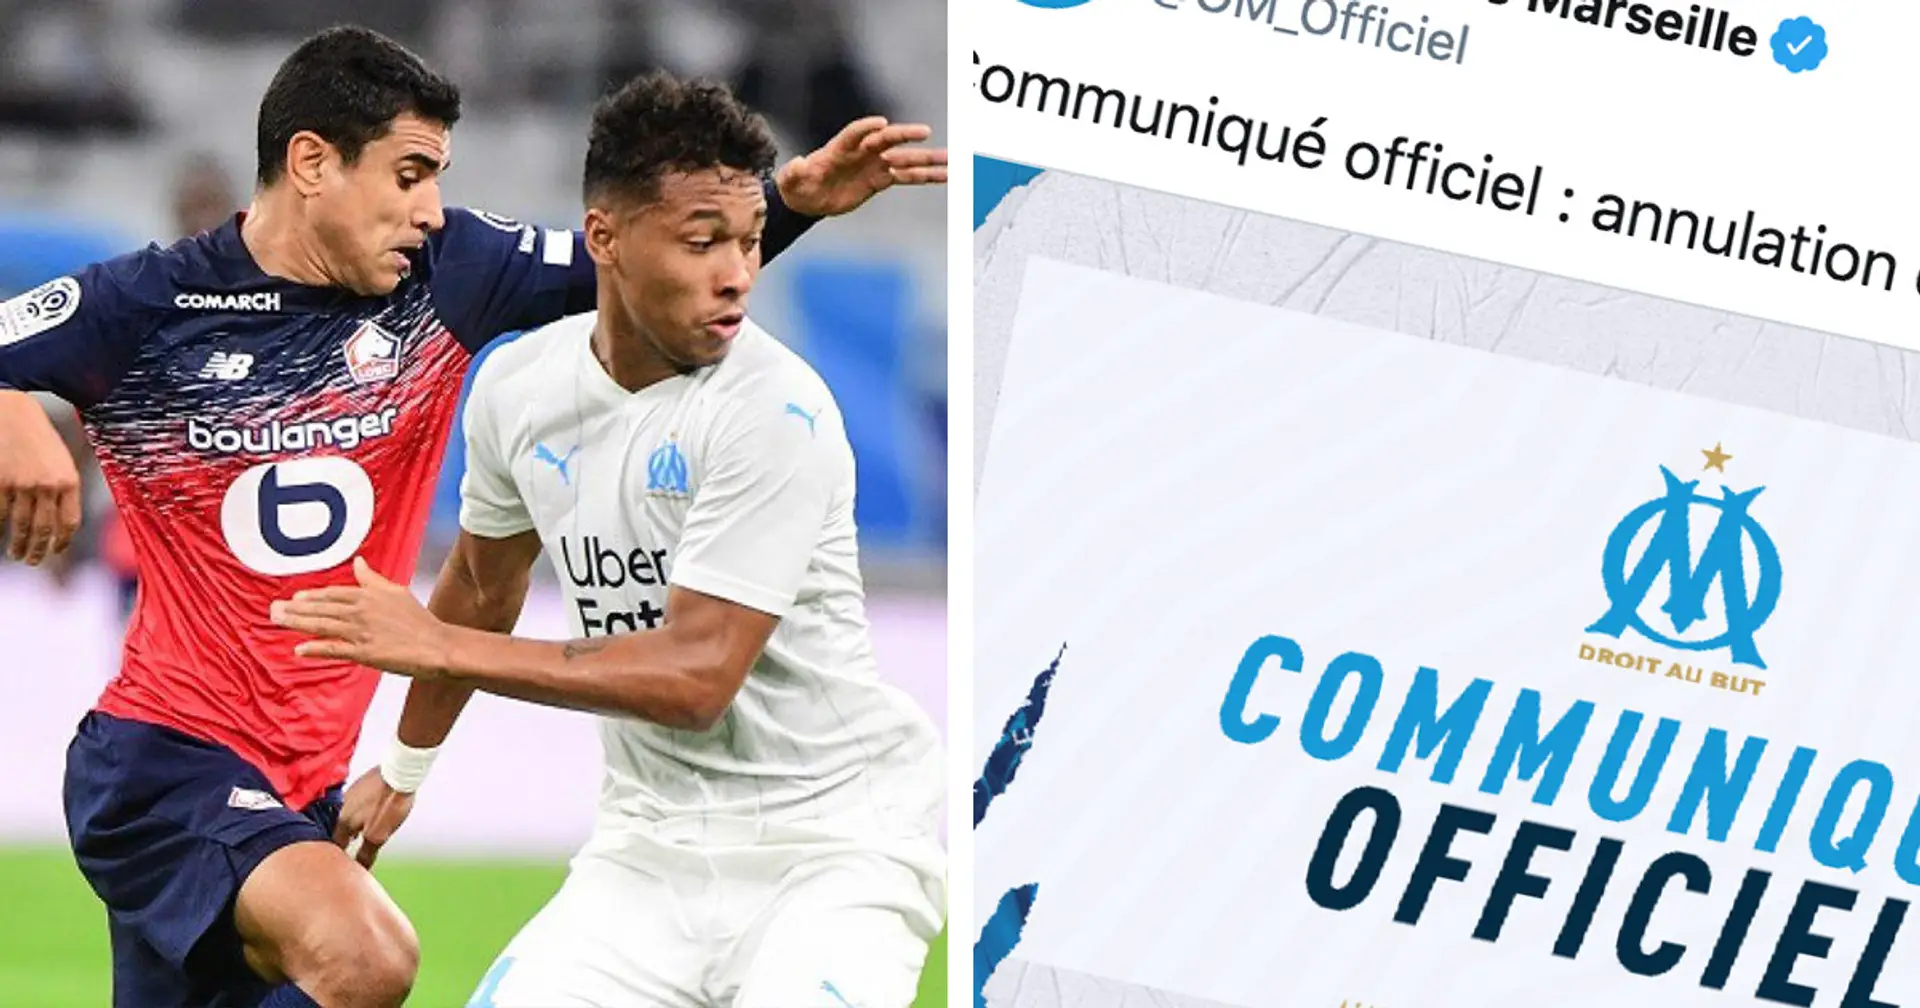 ⚡️ OFFICIEL: Le match amical de l'OM contre Montpellier est annulé